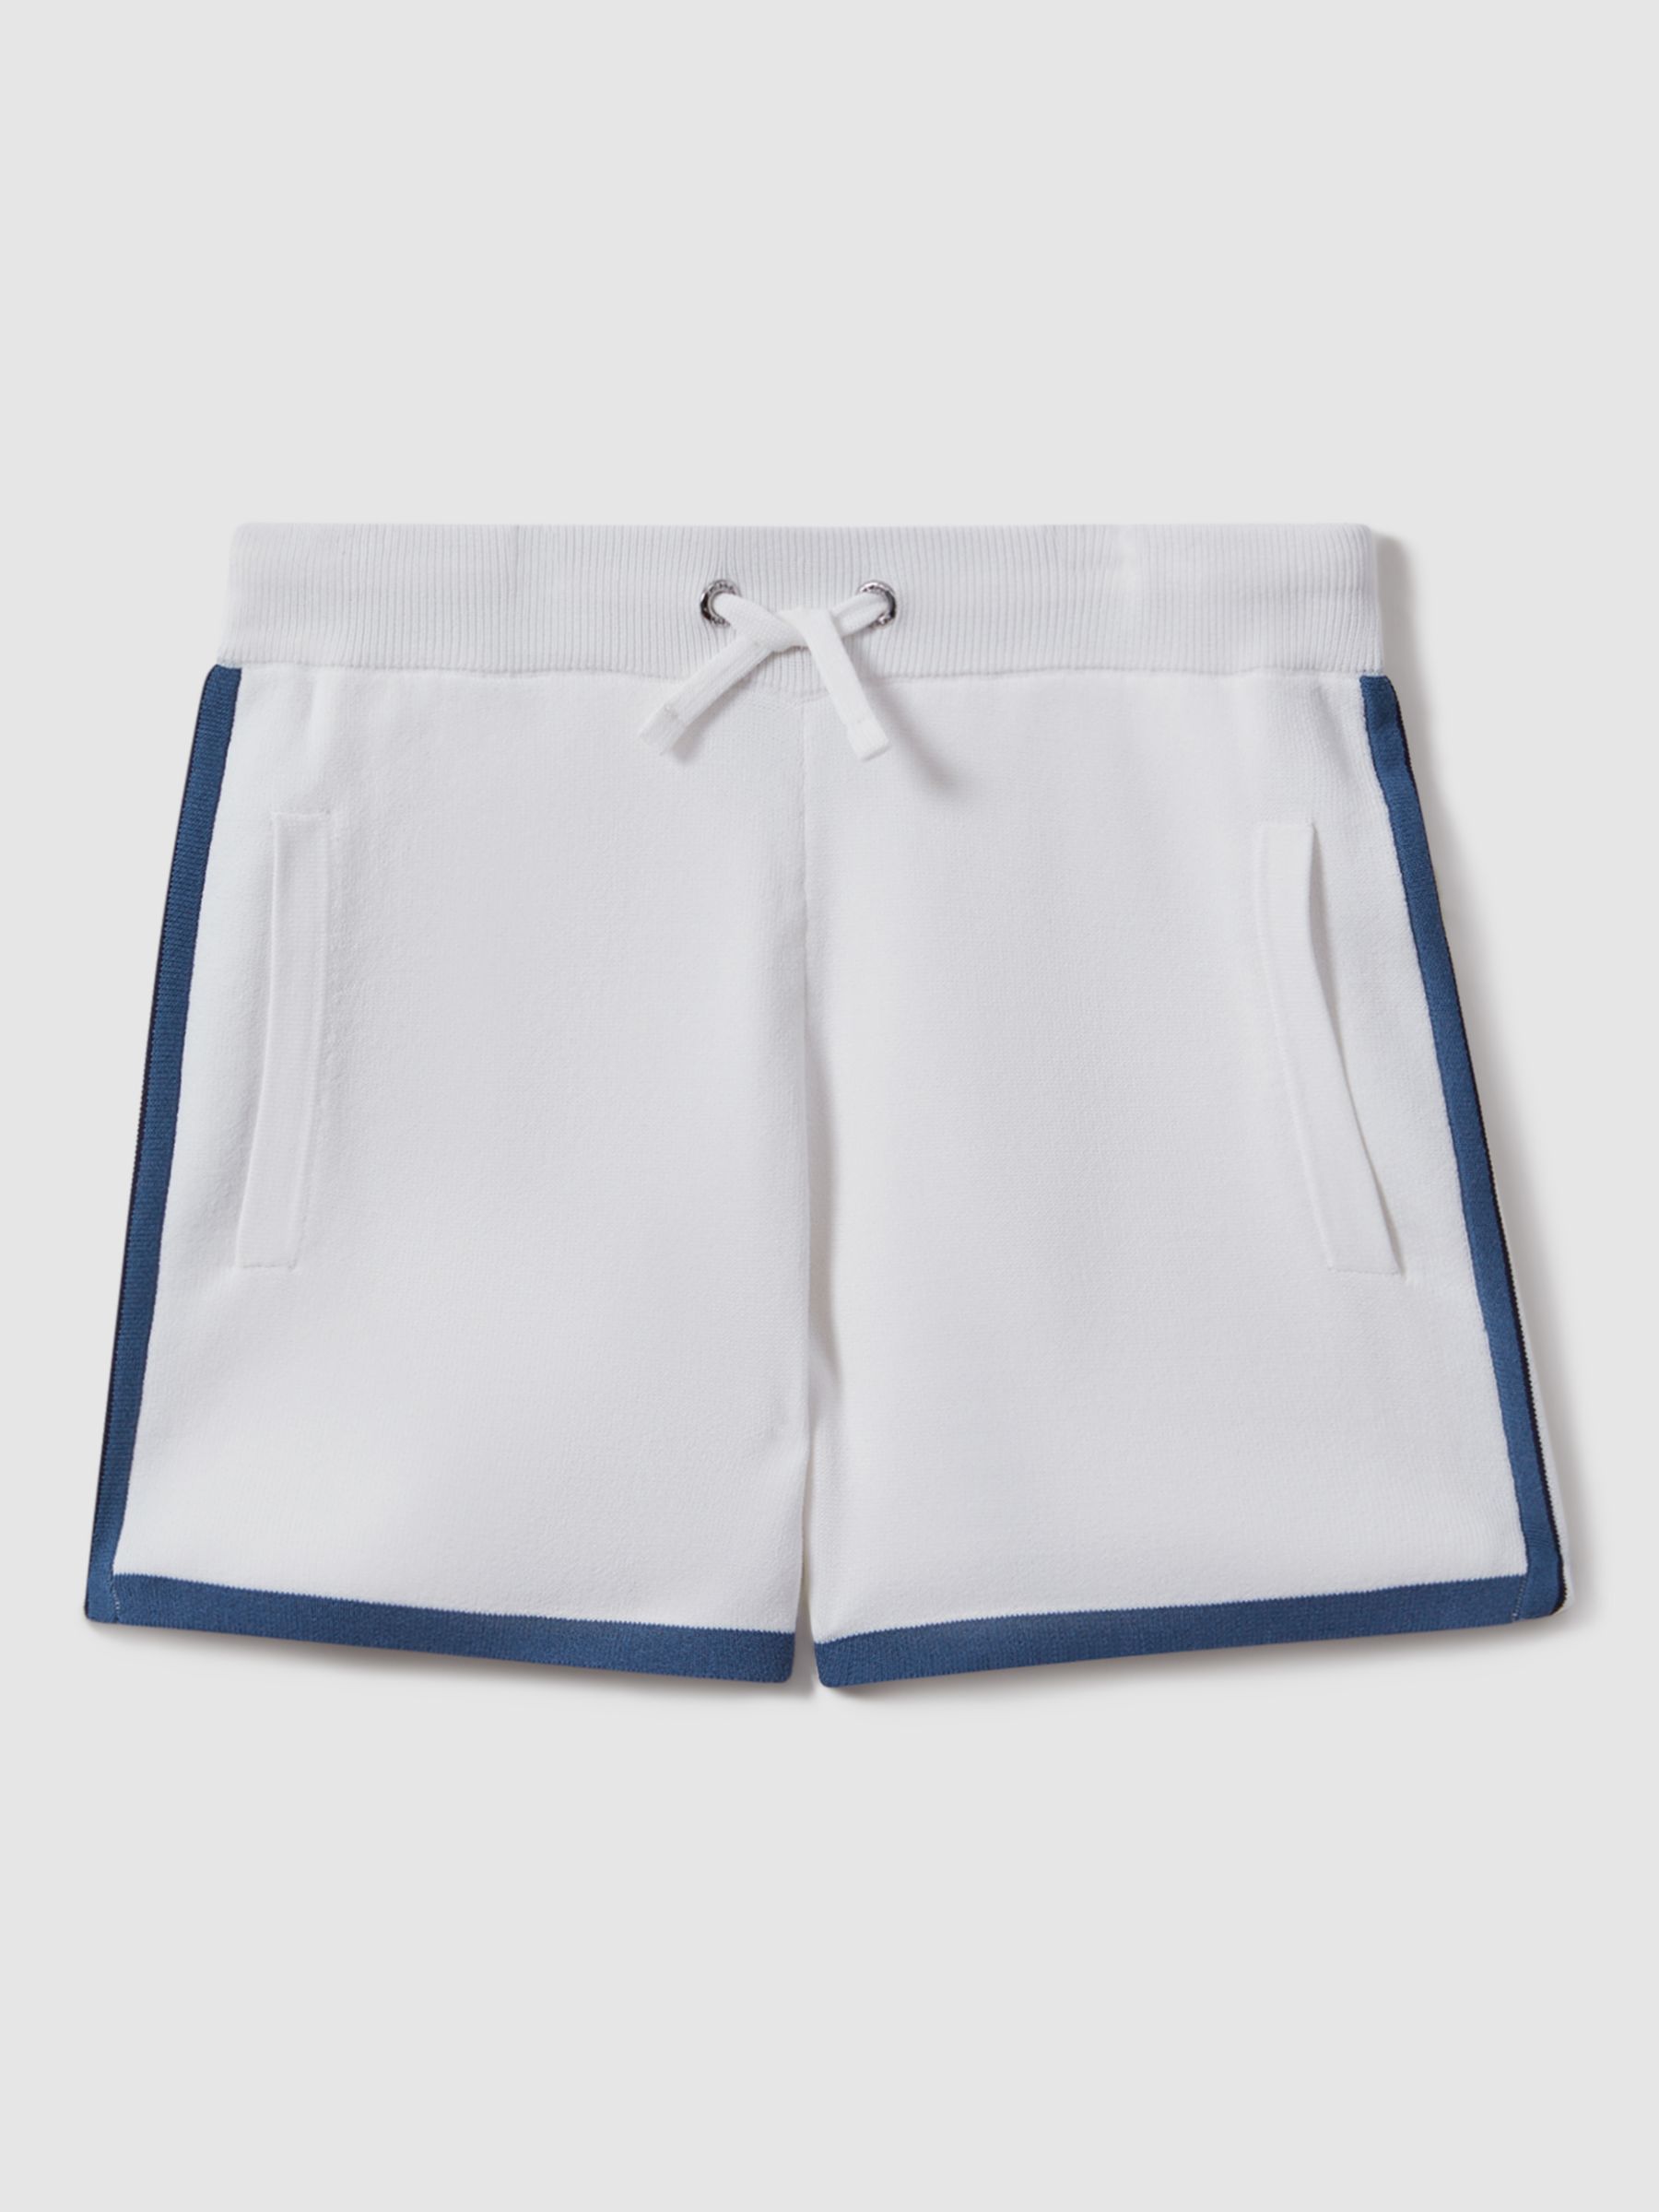 Reiss Kids' Heddon Tipping Drawstring Shorts, White, 3-4 years